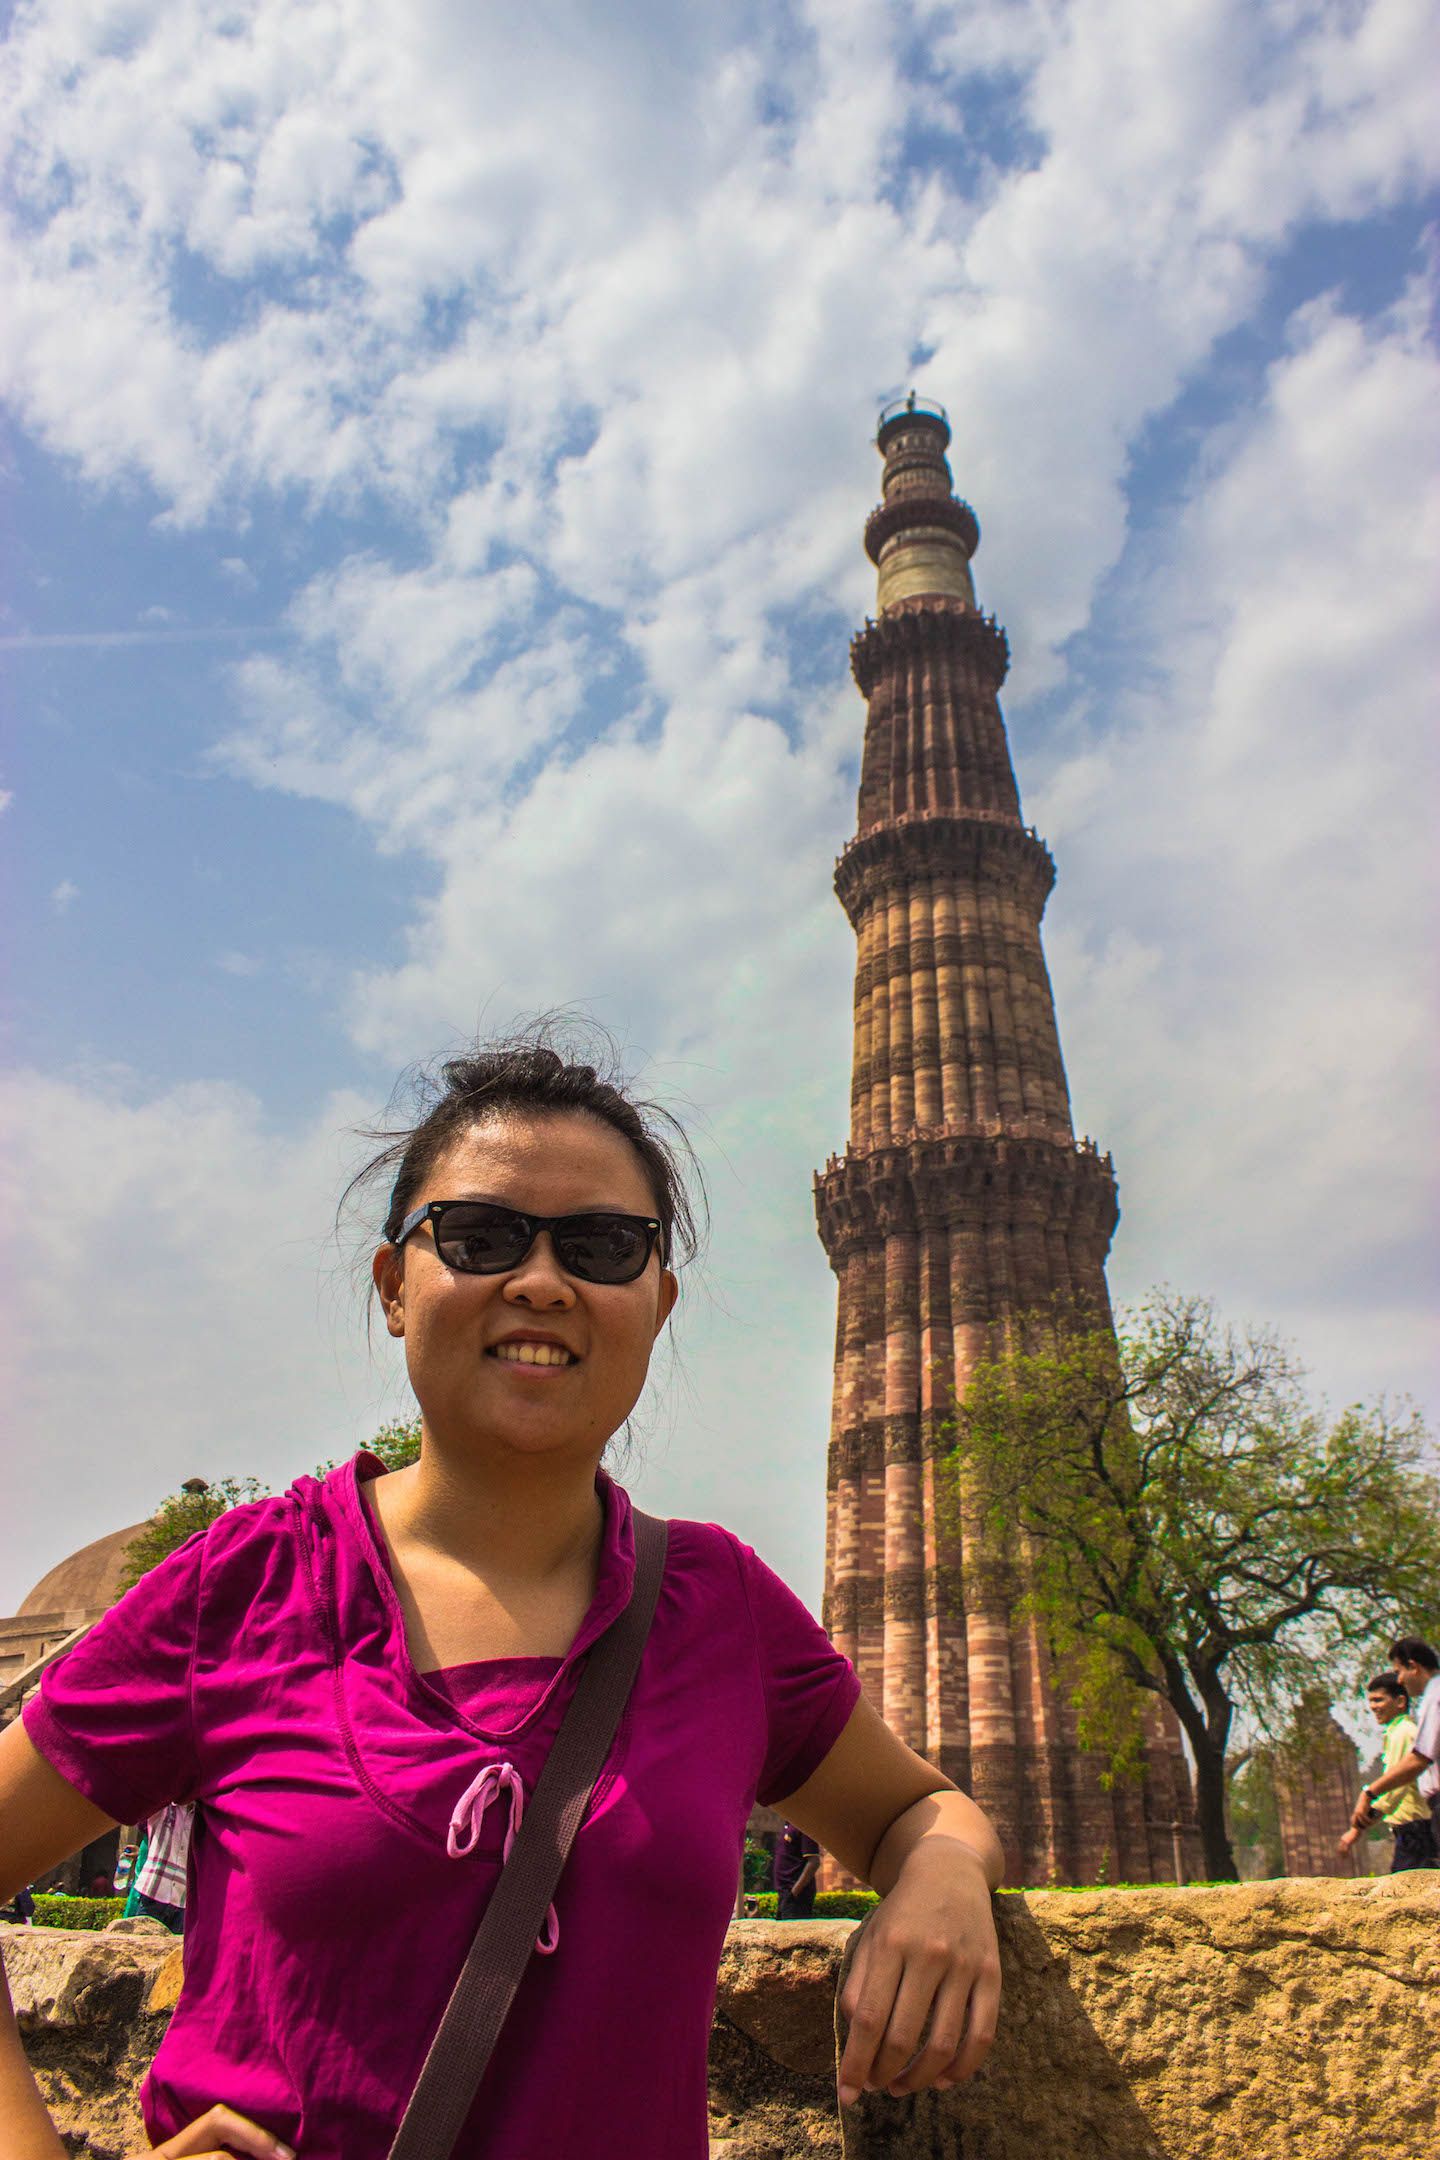 Julie at Qutb Minar, New Delhi, India